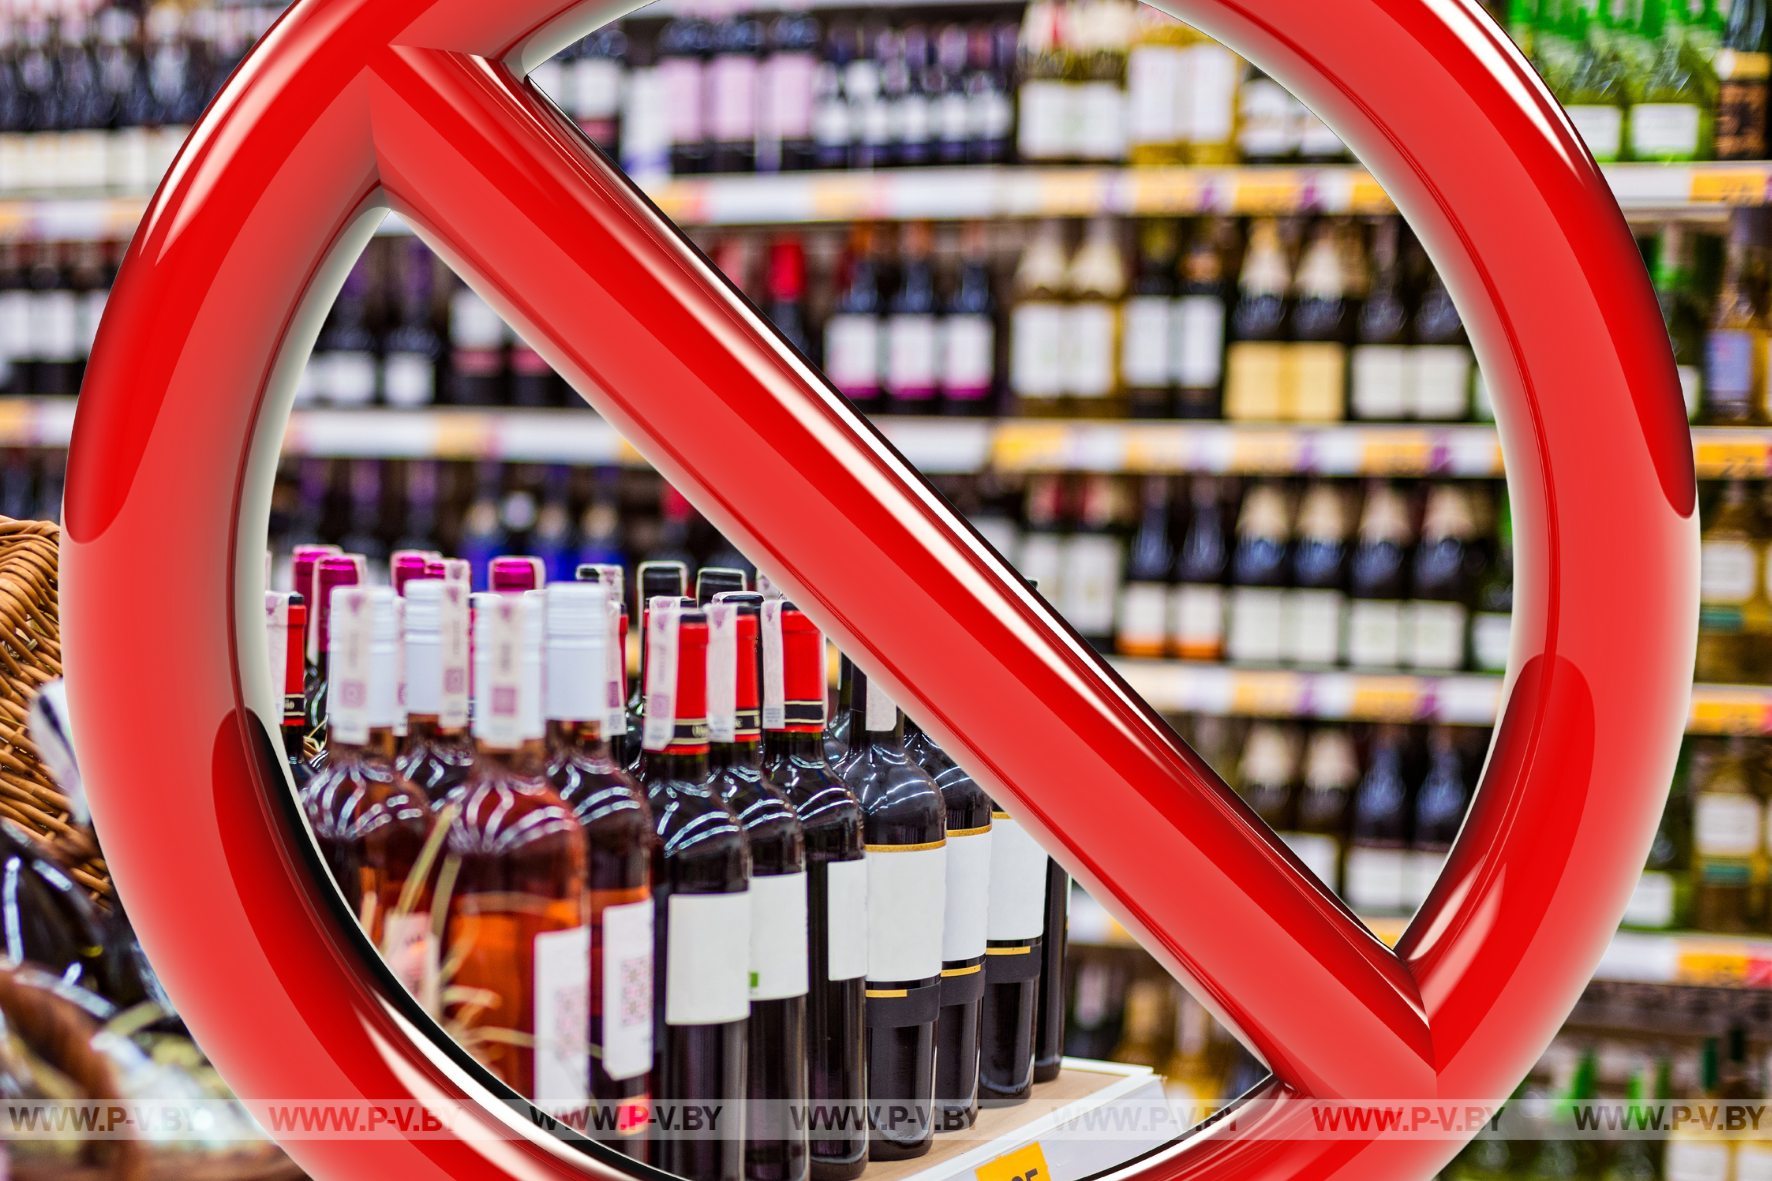 7 апреля время продажи алкогольных напитков, пива и слабоалкогольных напитков с объемной долей этилового спирта не более 7% будет ограничено с 00.00 до 24.00